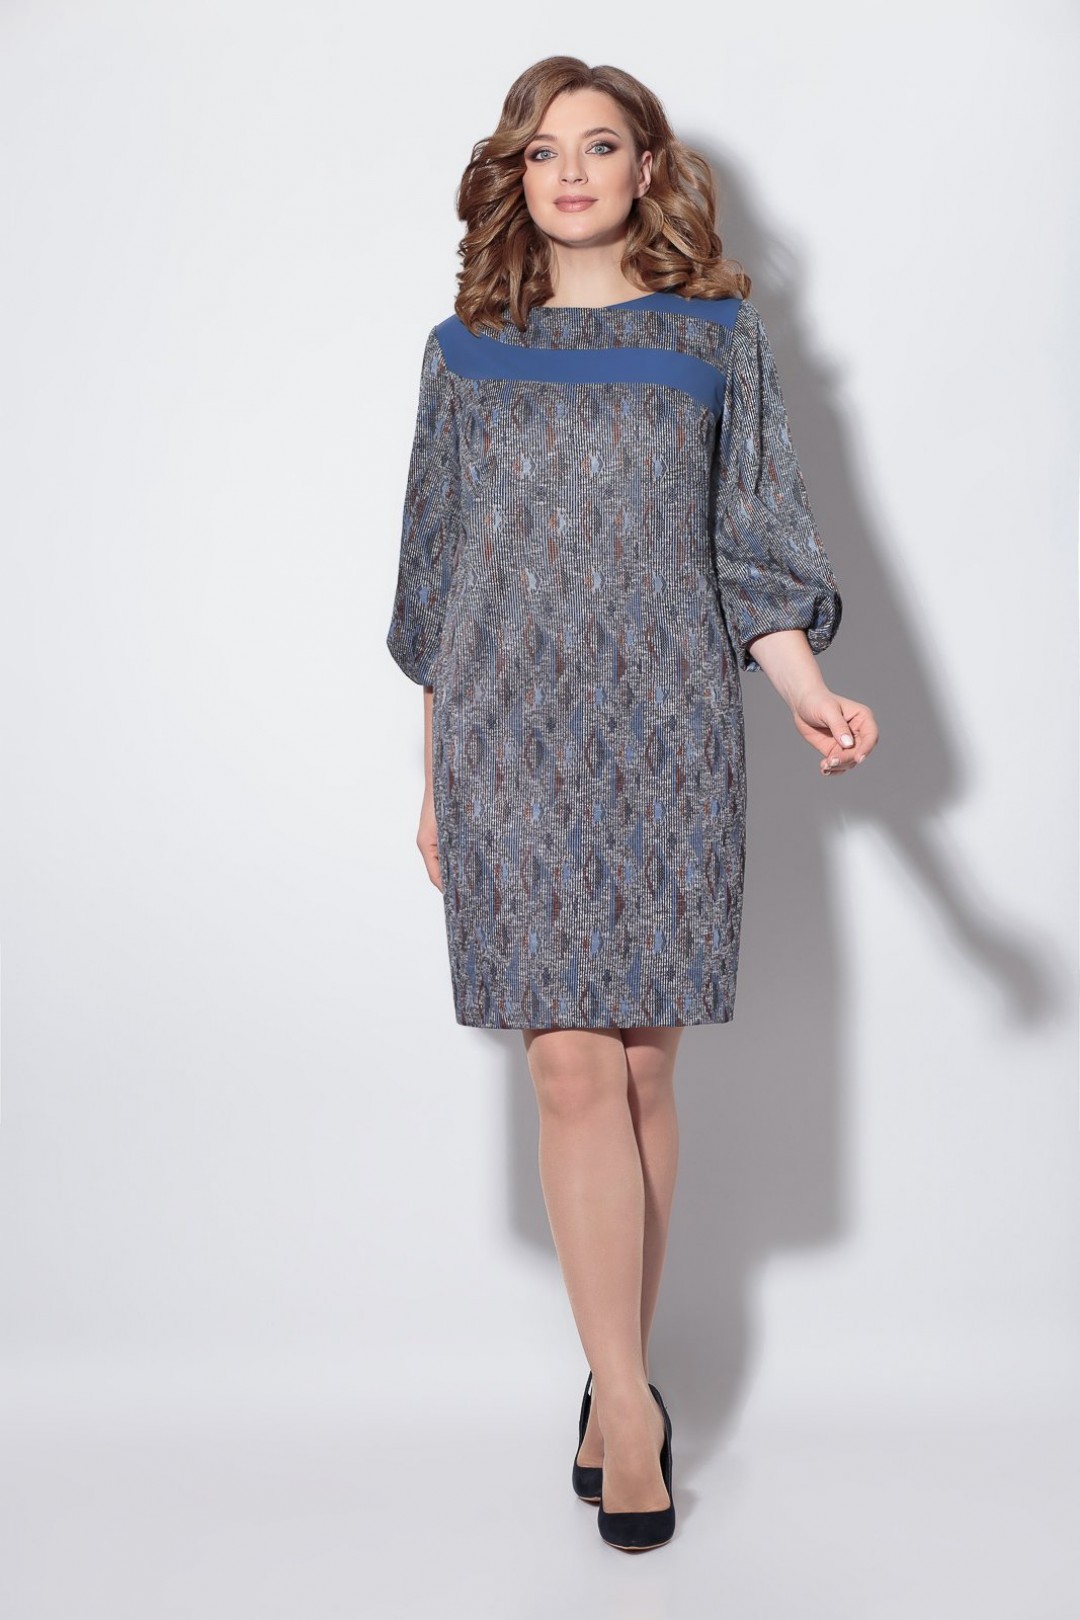 Платье  Кокетка и К 794 серый с голубым